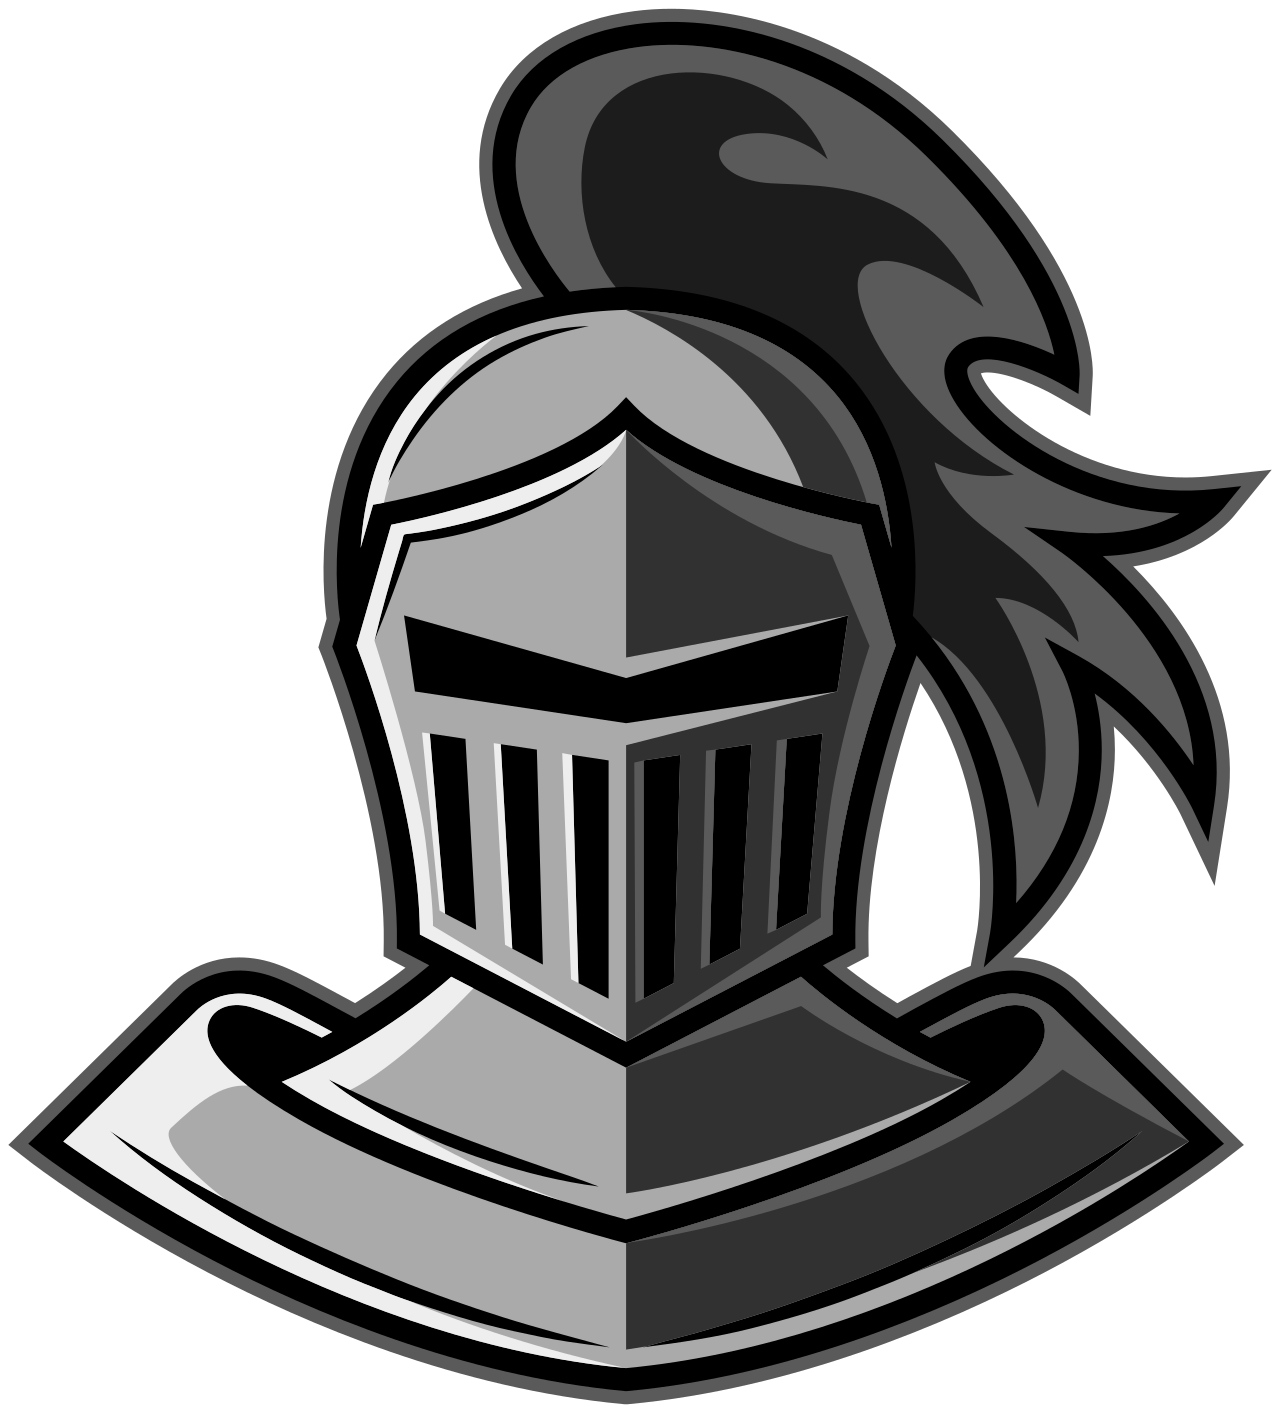 Garner Knights's logo